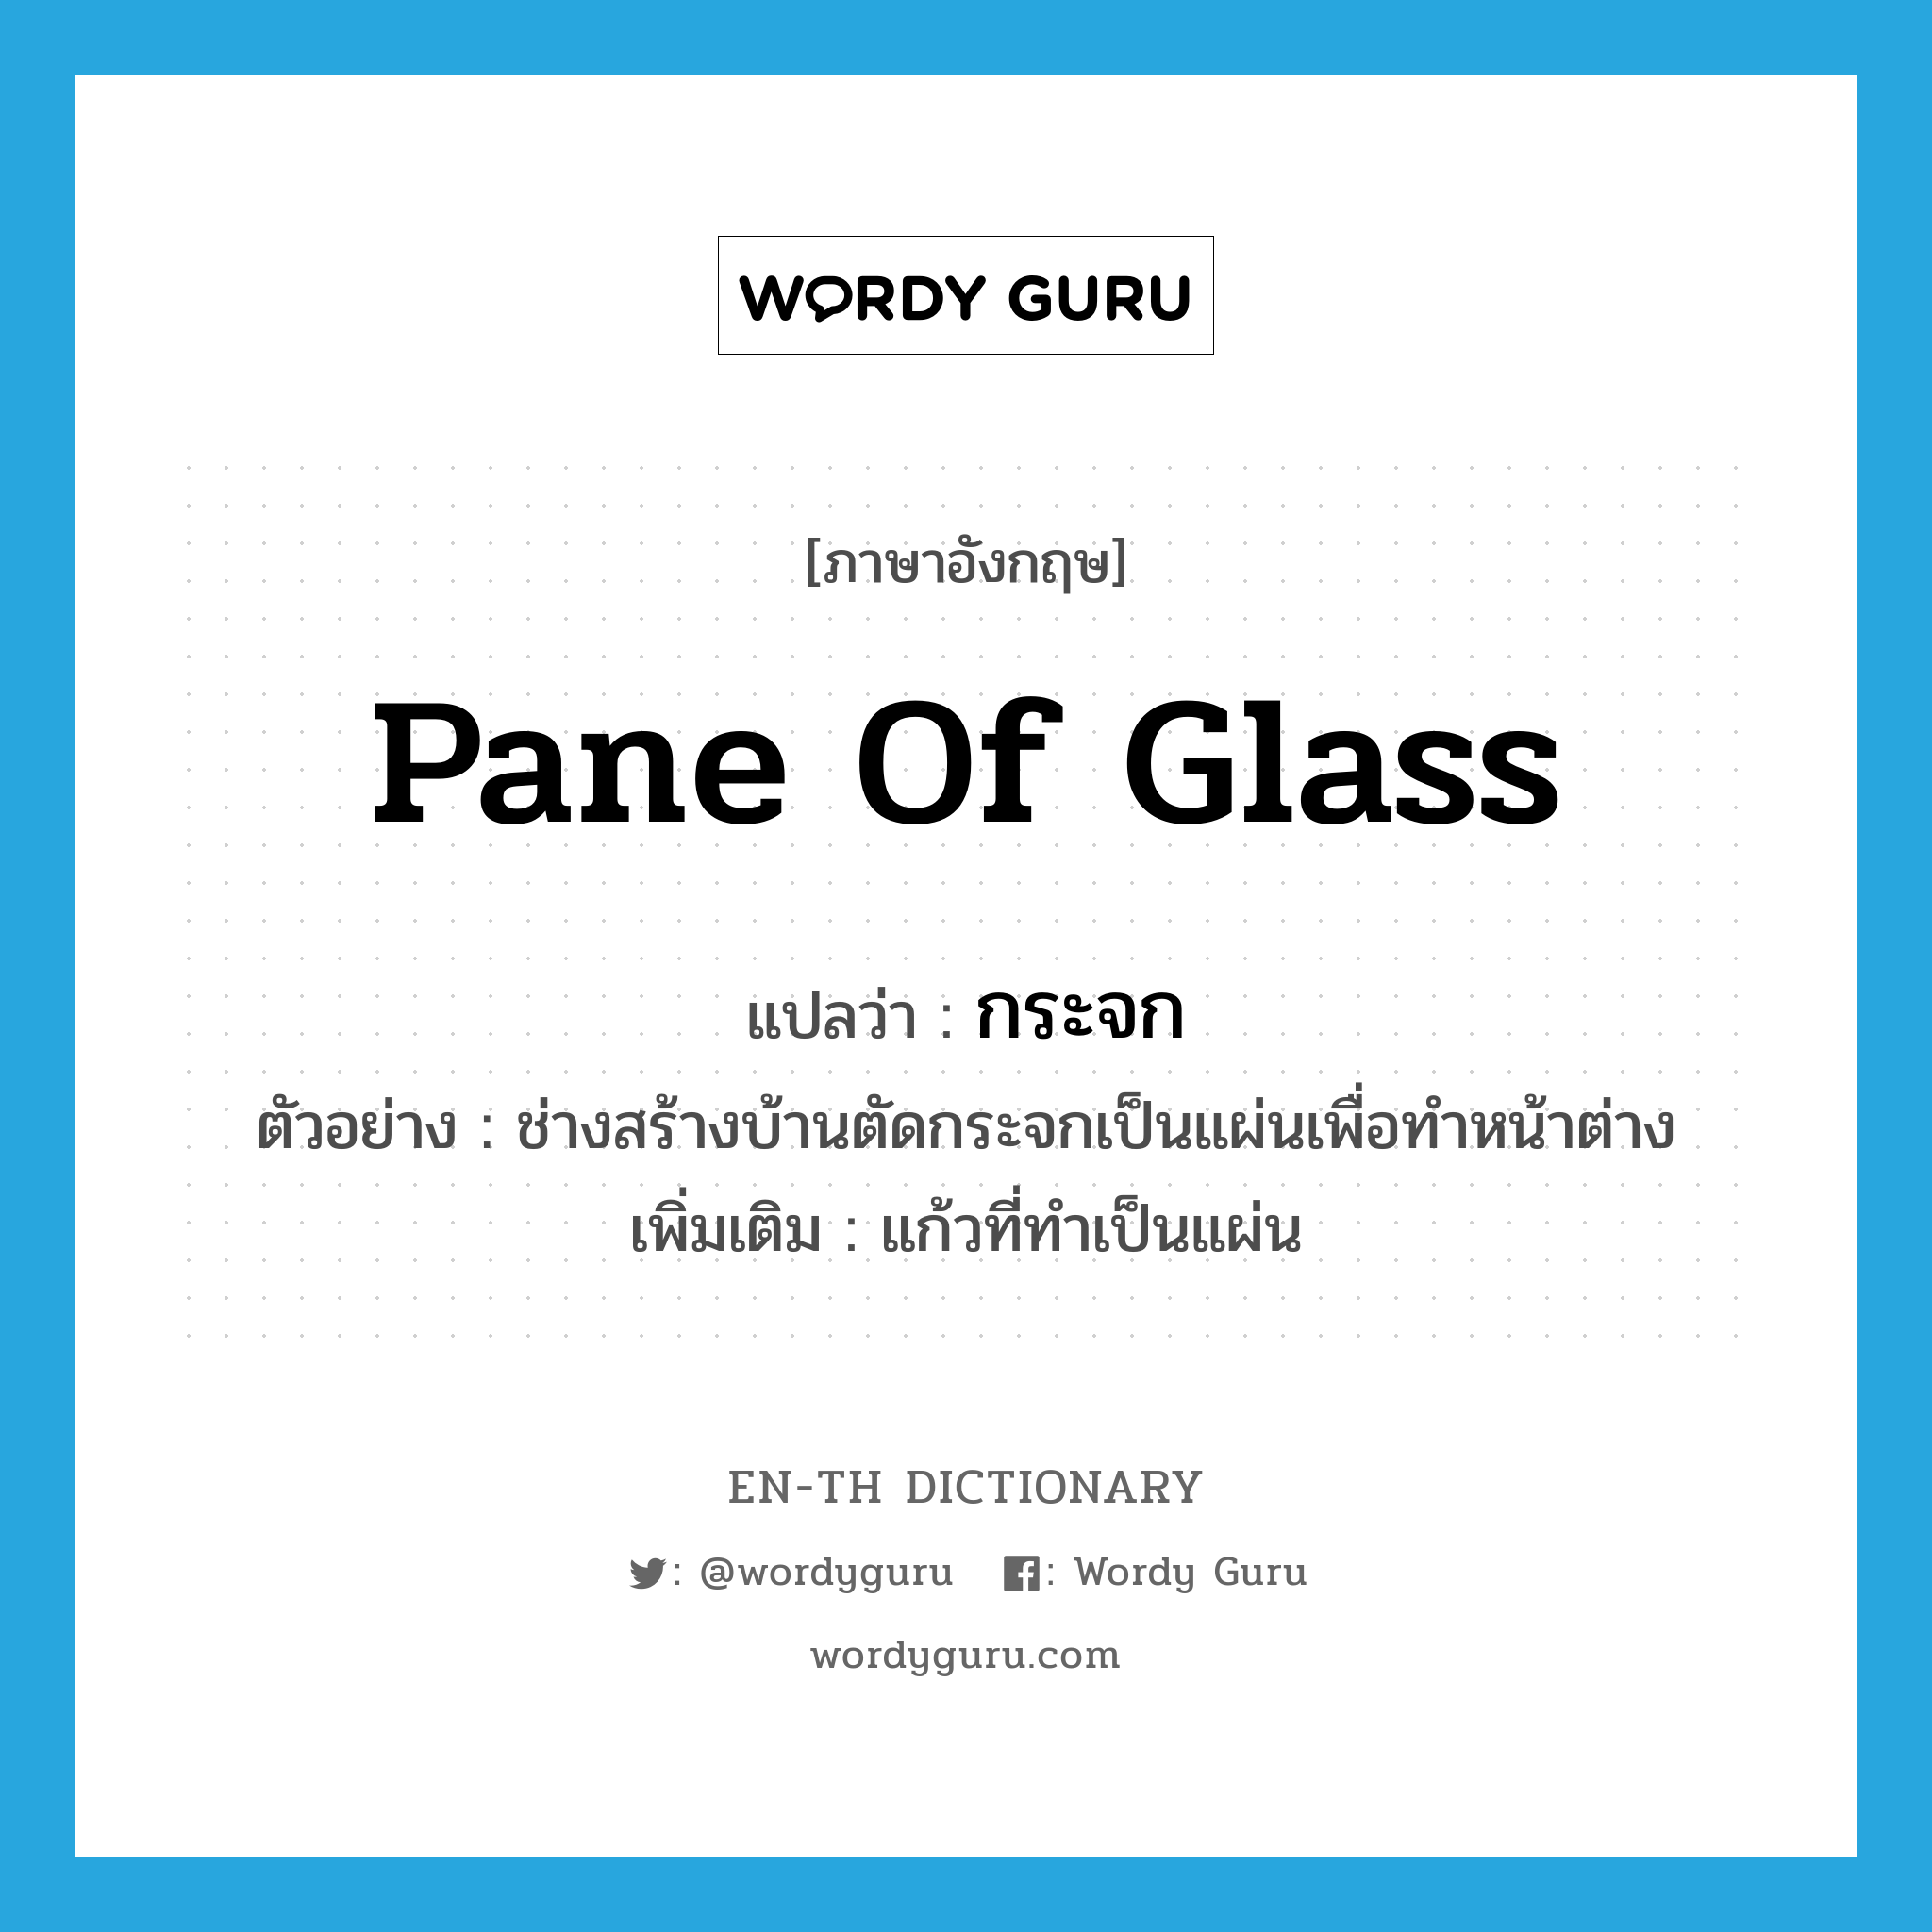 pane of glass แปลว่า?, คำศัพท์ภาษาอังกฤษ pane of glass แปลว่า กระจก ประเภท N ตัวอย่าง ช่างสร้างบ้านตัดกระจกเป็นแผ่นเพื่อทำหน้าต่าง เพิ่มเติม แก้วที่ทำเป็นแผ่น หมวด N